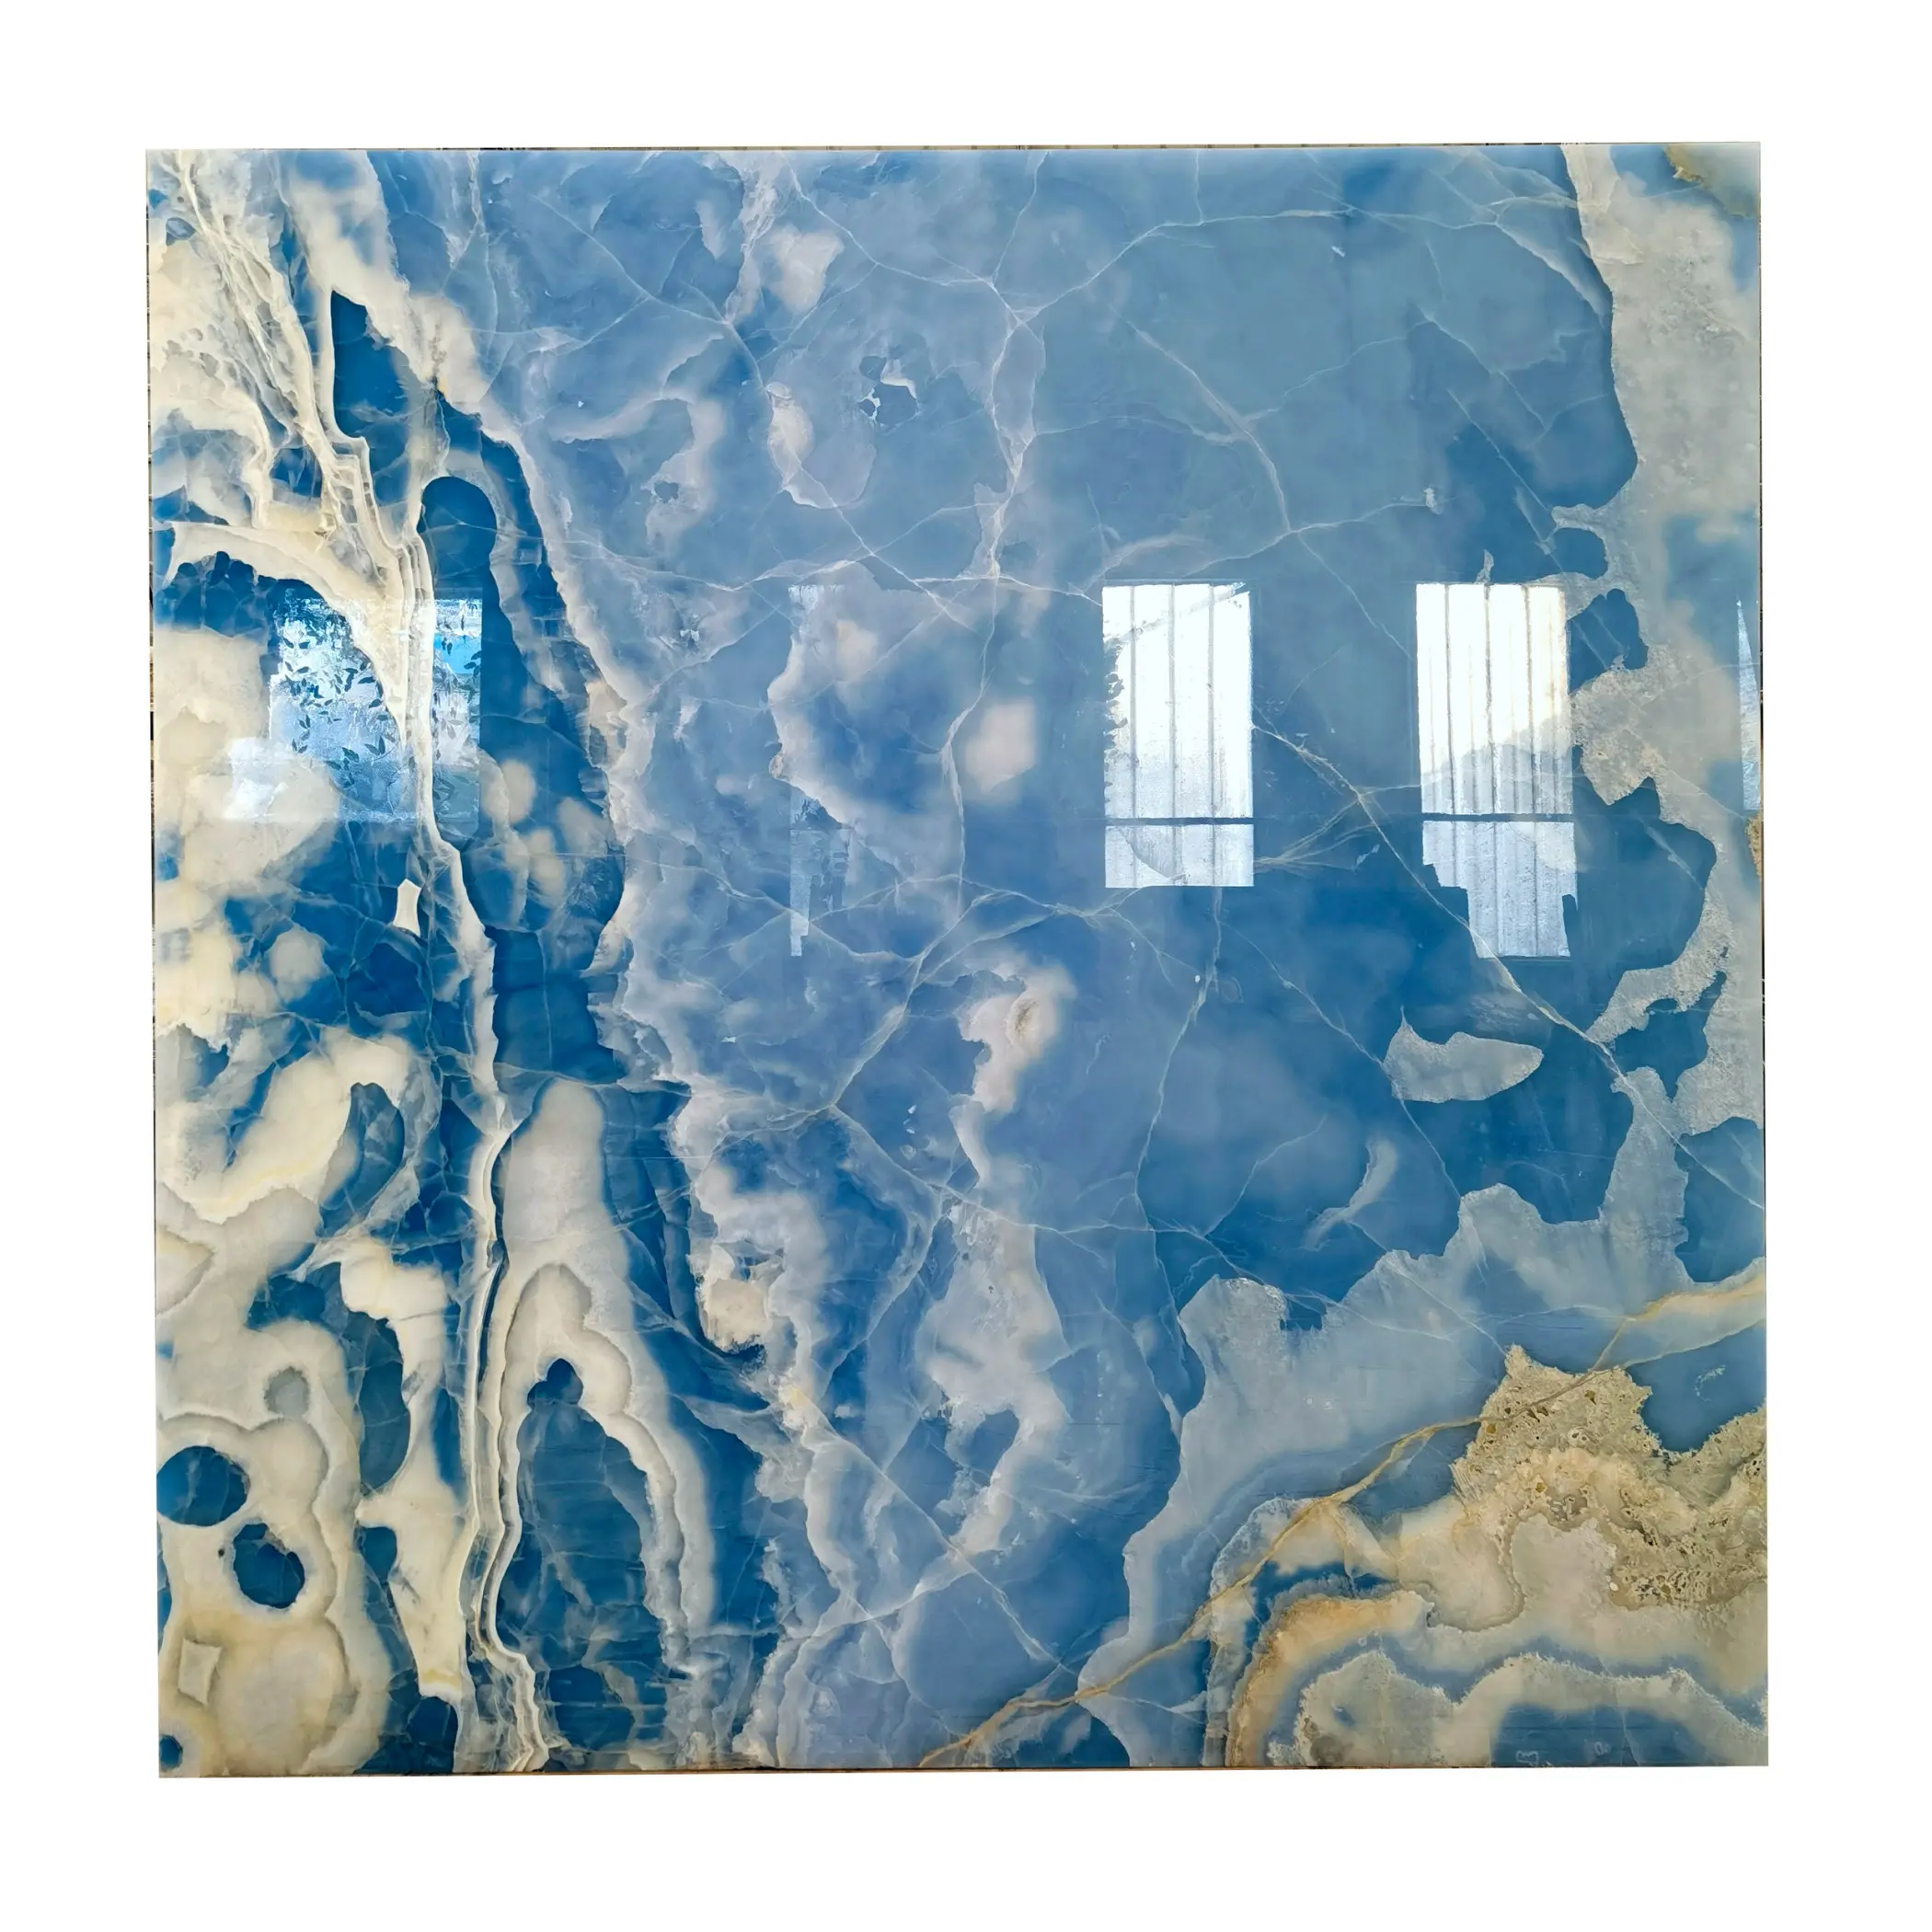 Jade smaragdblau Onyx Luxus Kristall Onyx Stein Marmor große Platten für zuges chnittene Fliesen